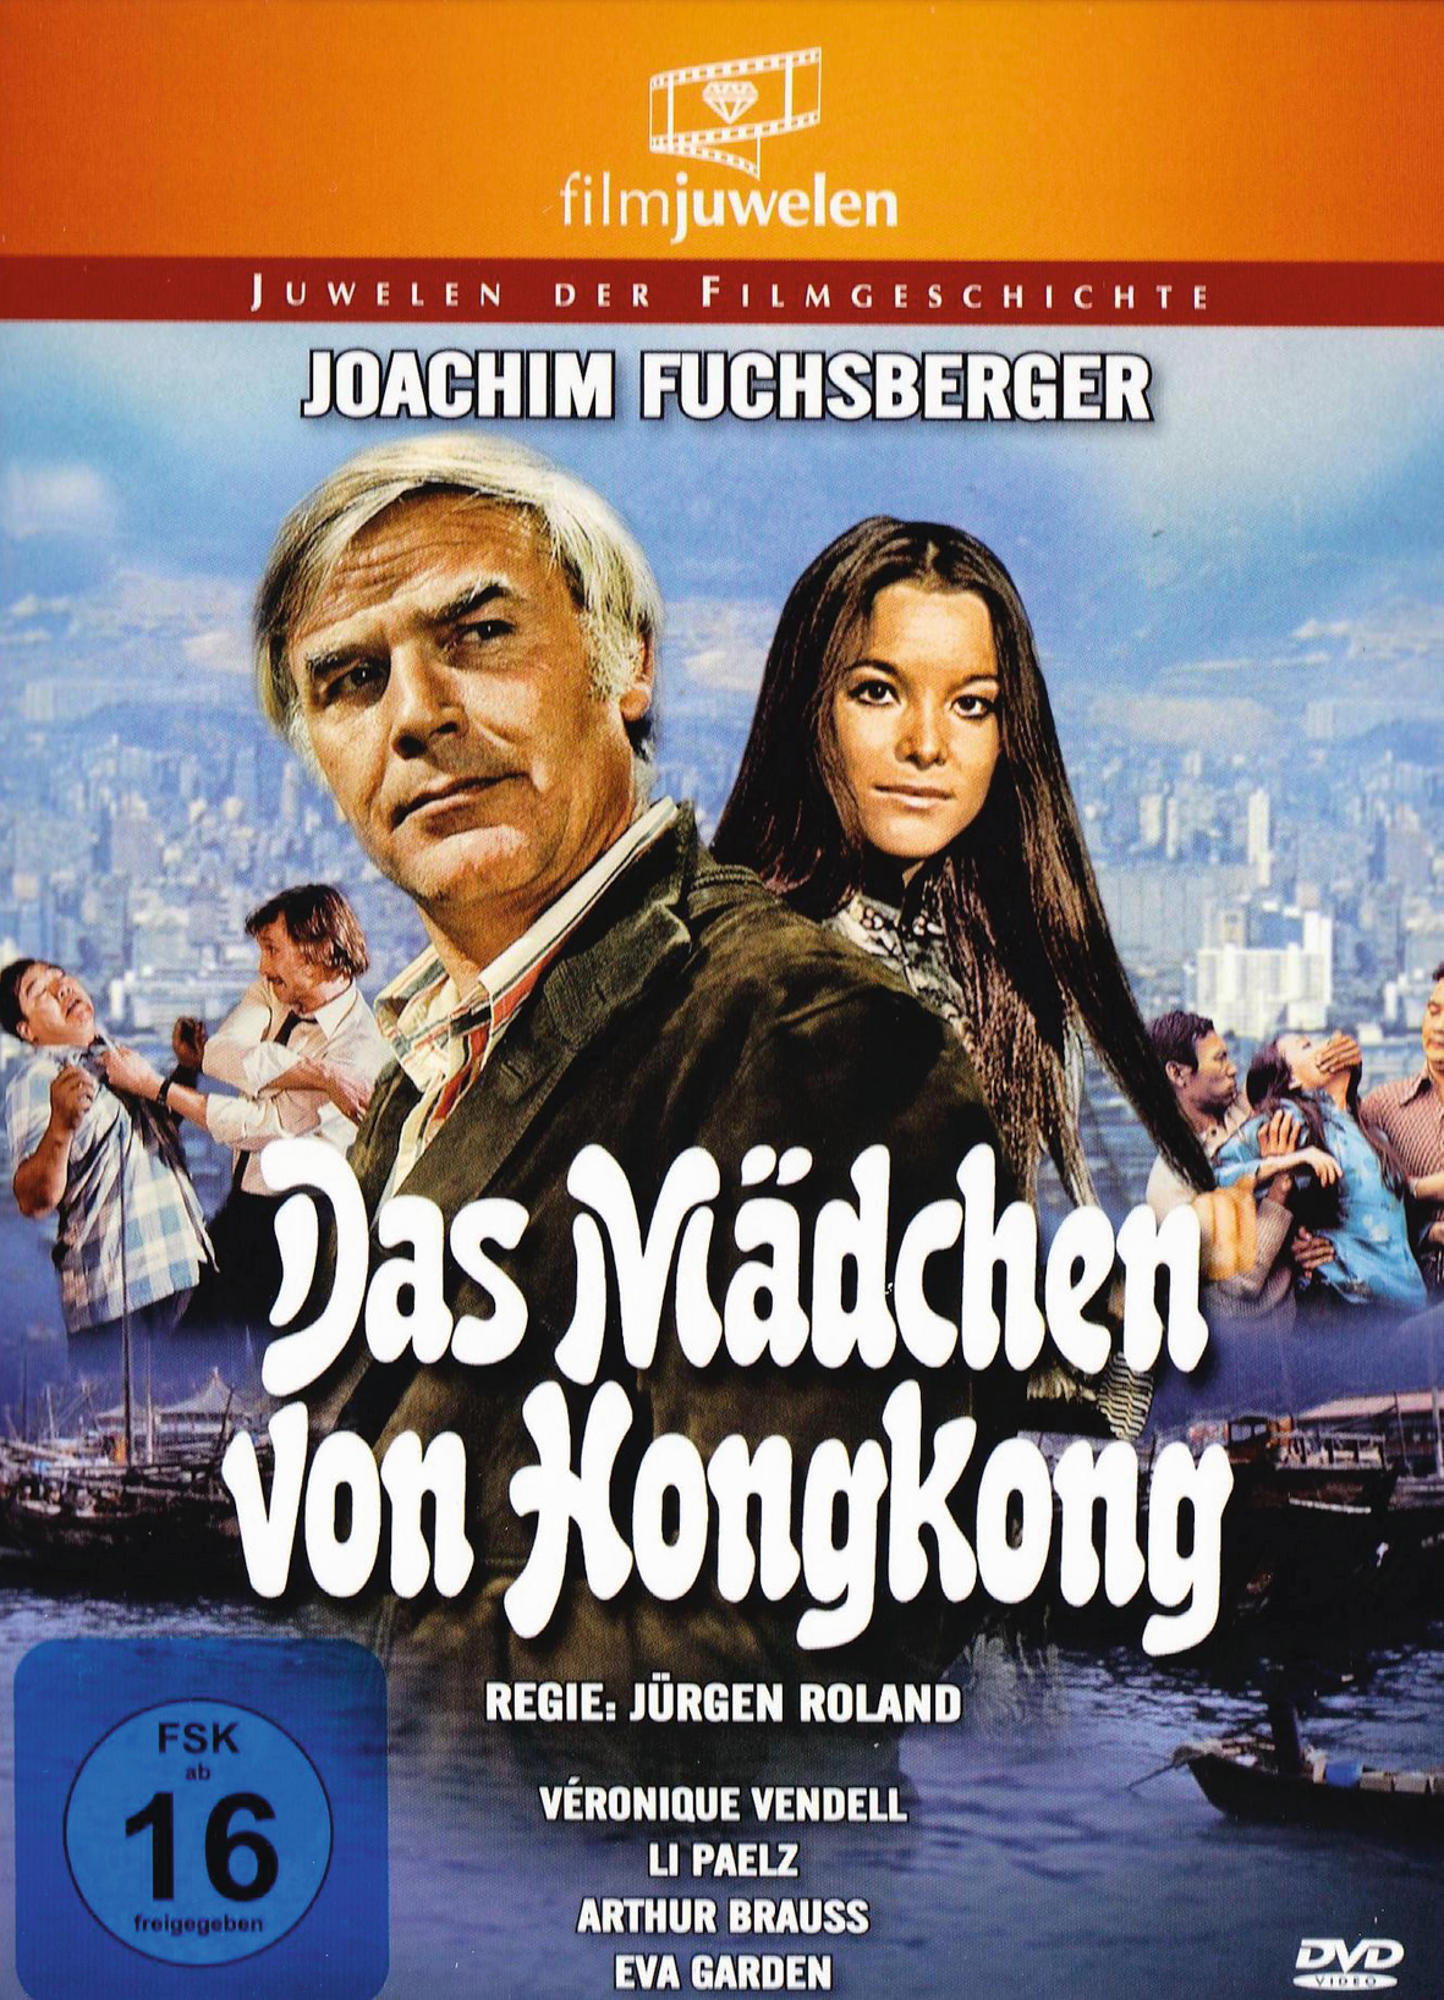 DAS MÄDCHEN VON HONGKONG (DIE REISSER) HONGKONG DVD